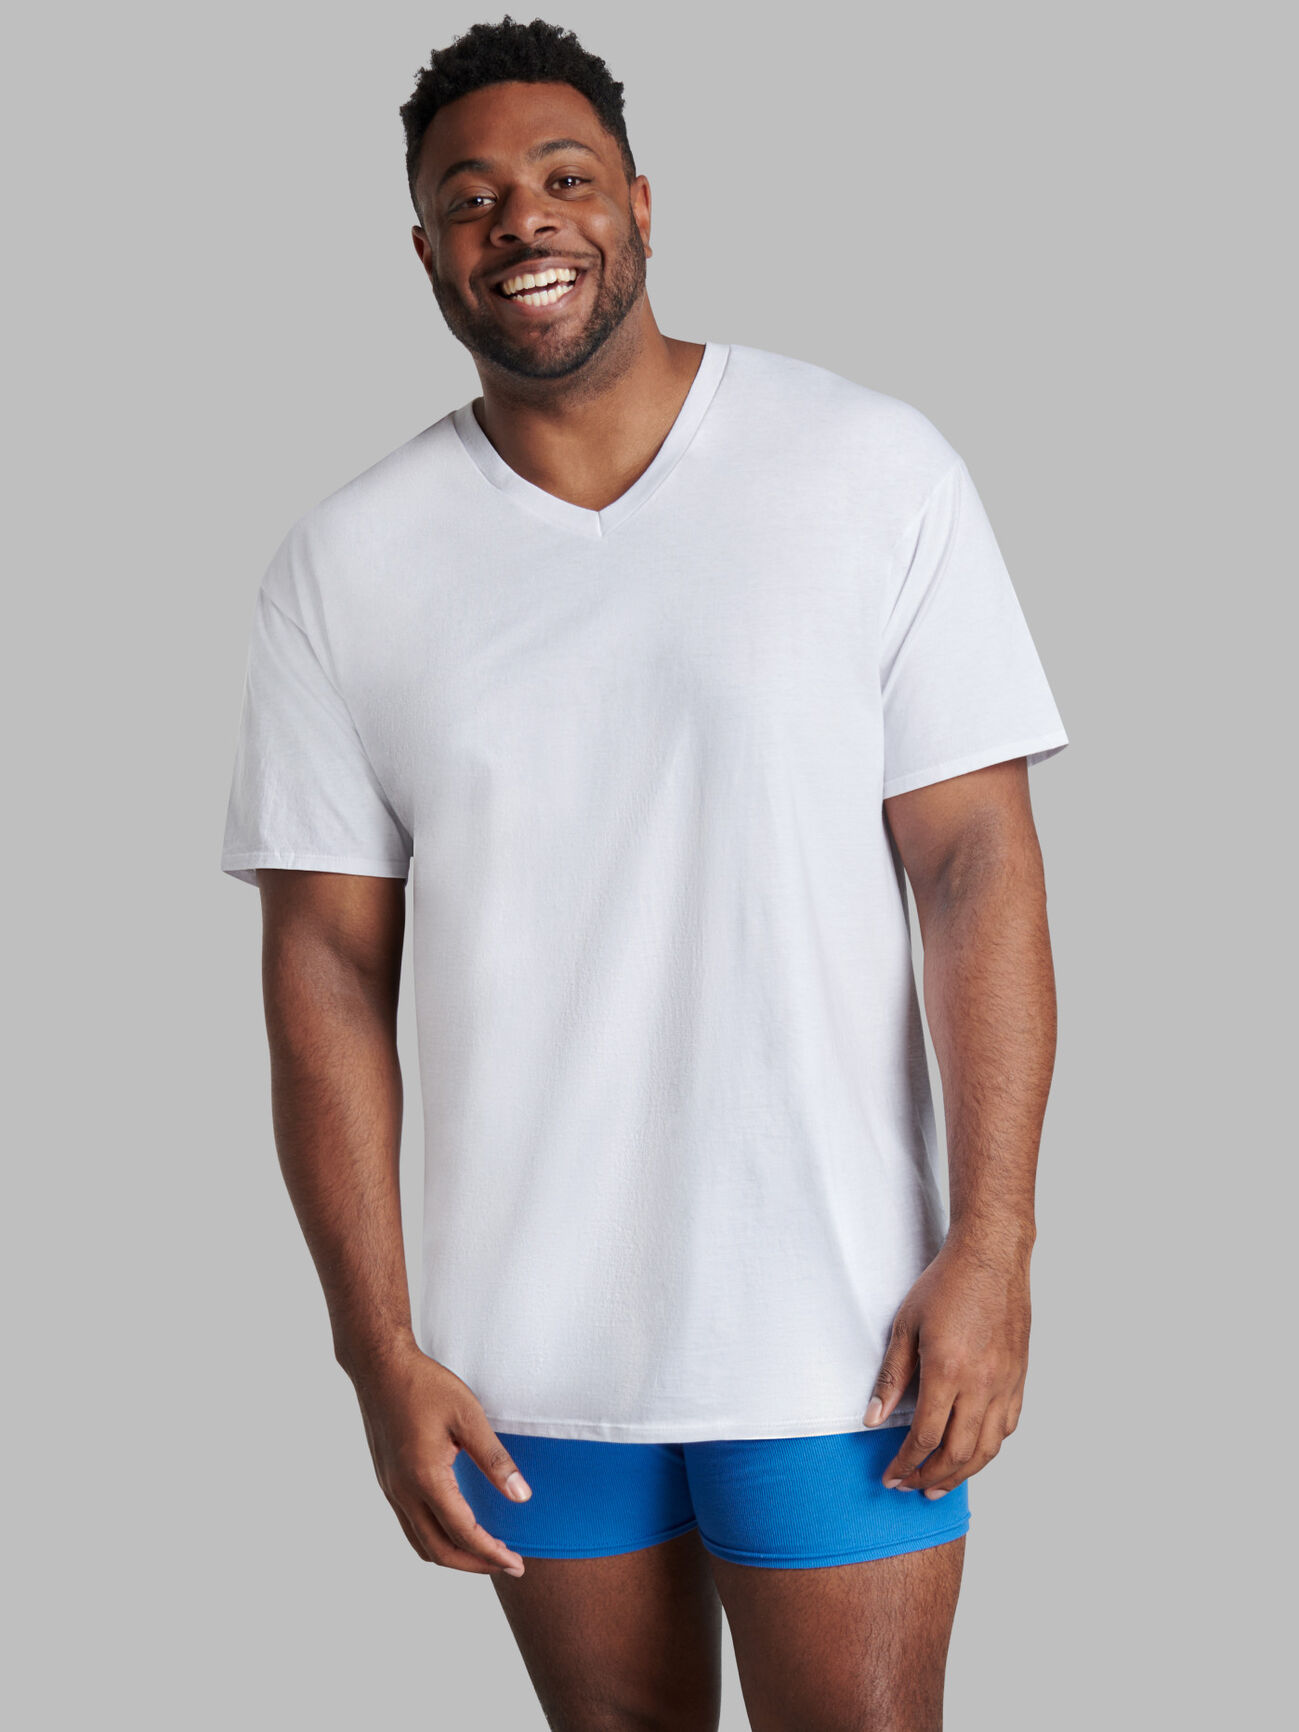 Men's 100% Cotton Big & Tall Shirts